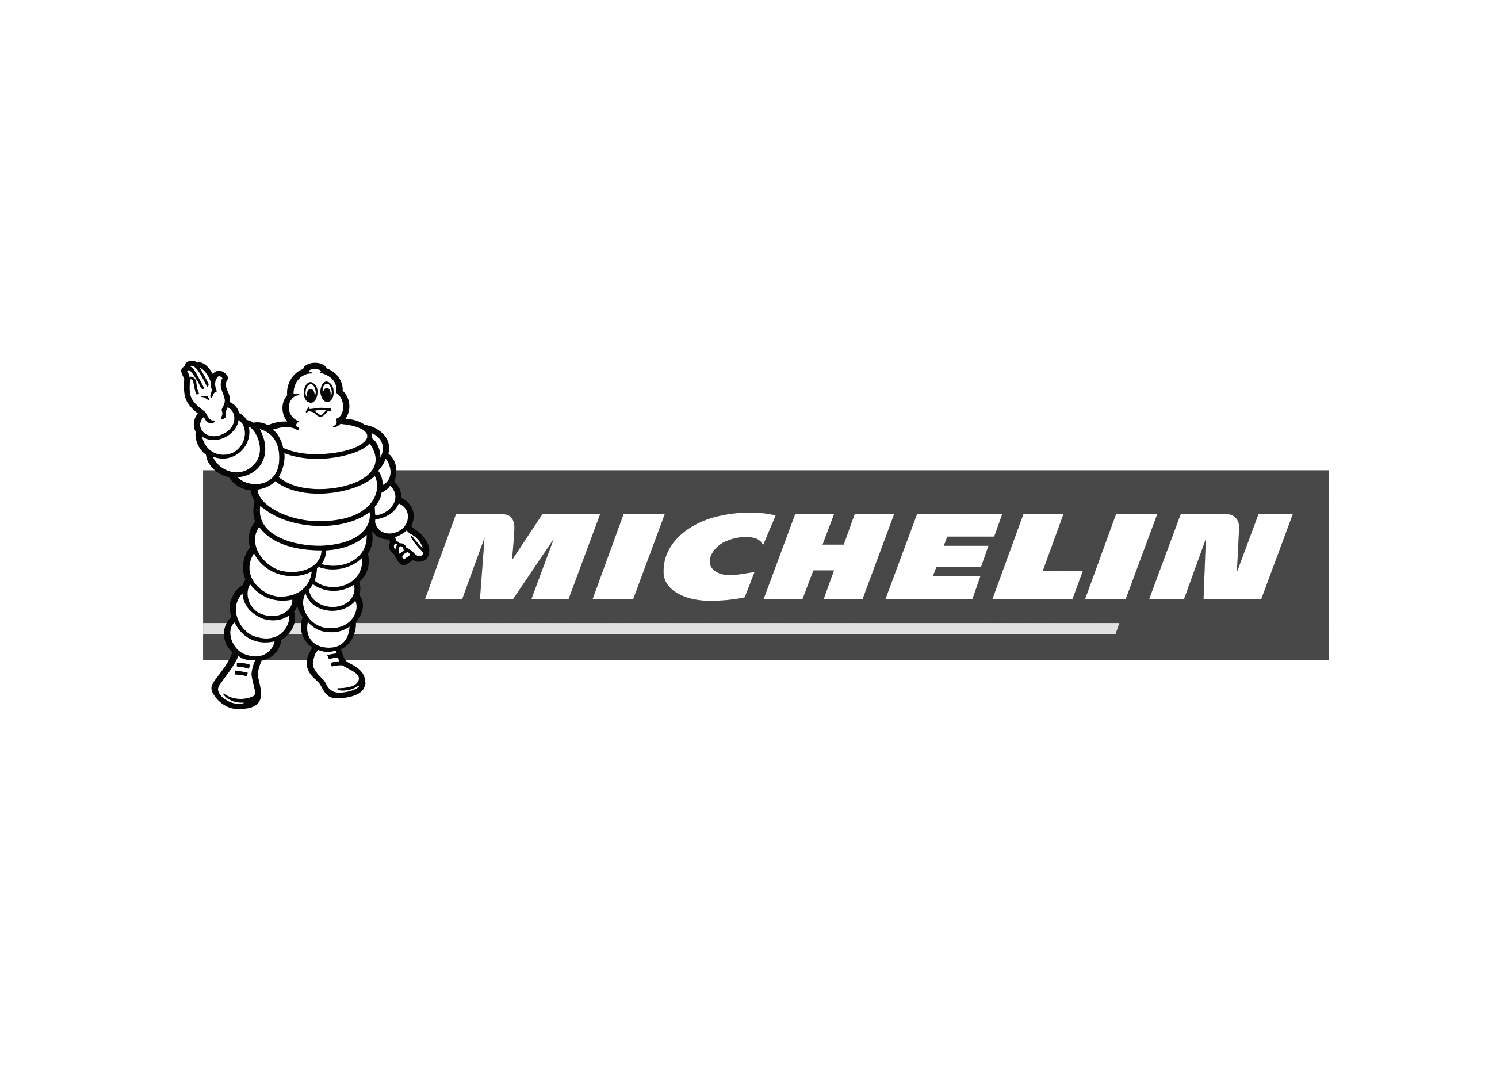 Micheline-01.jpg